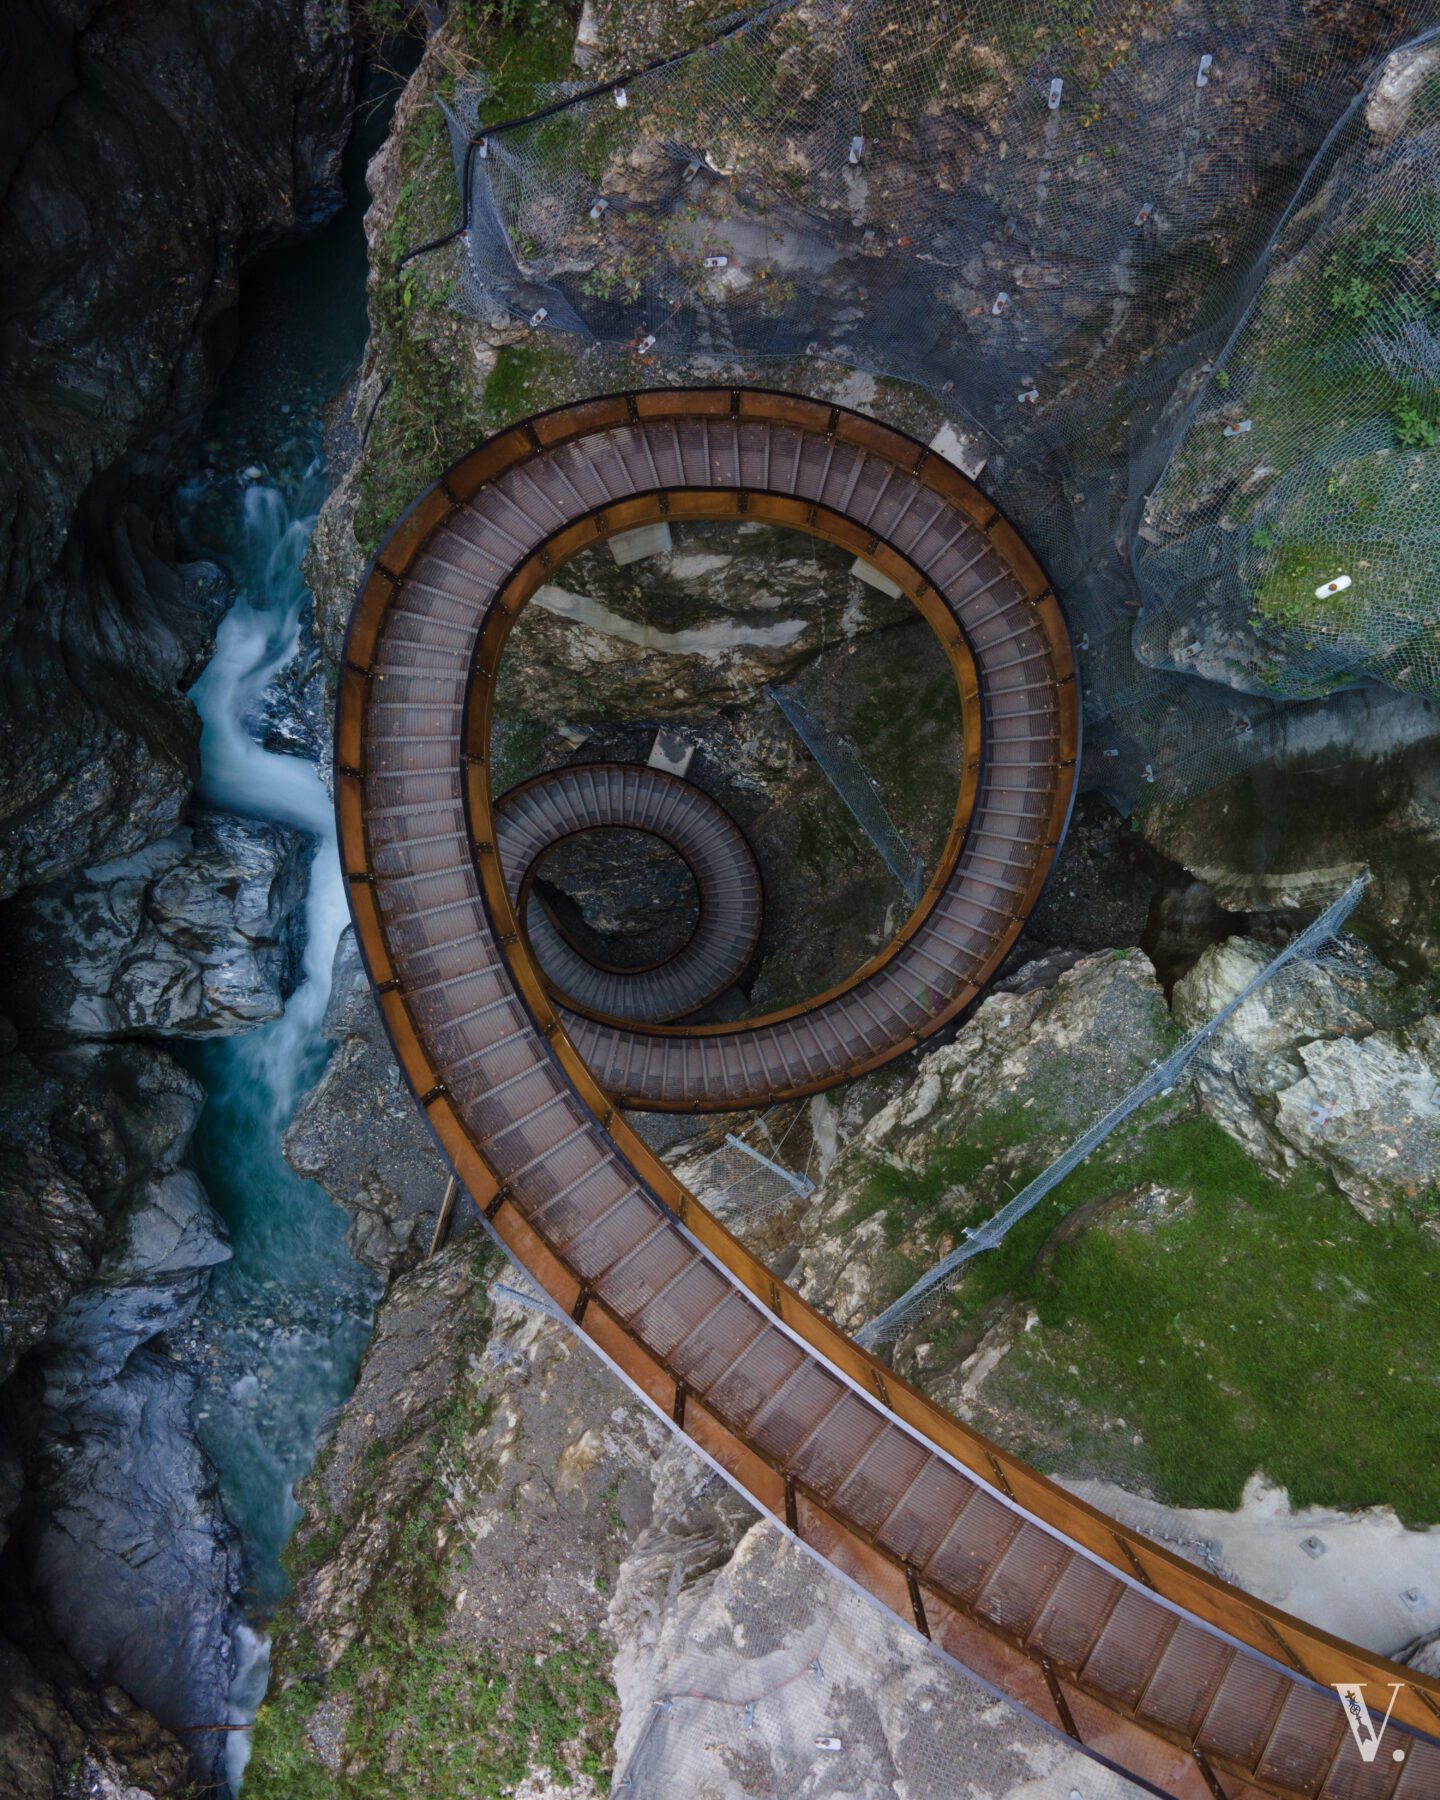 De spectaculaire Helix trap is een blikvanger van de Liechtensteinklamm